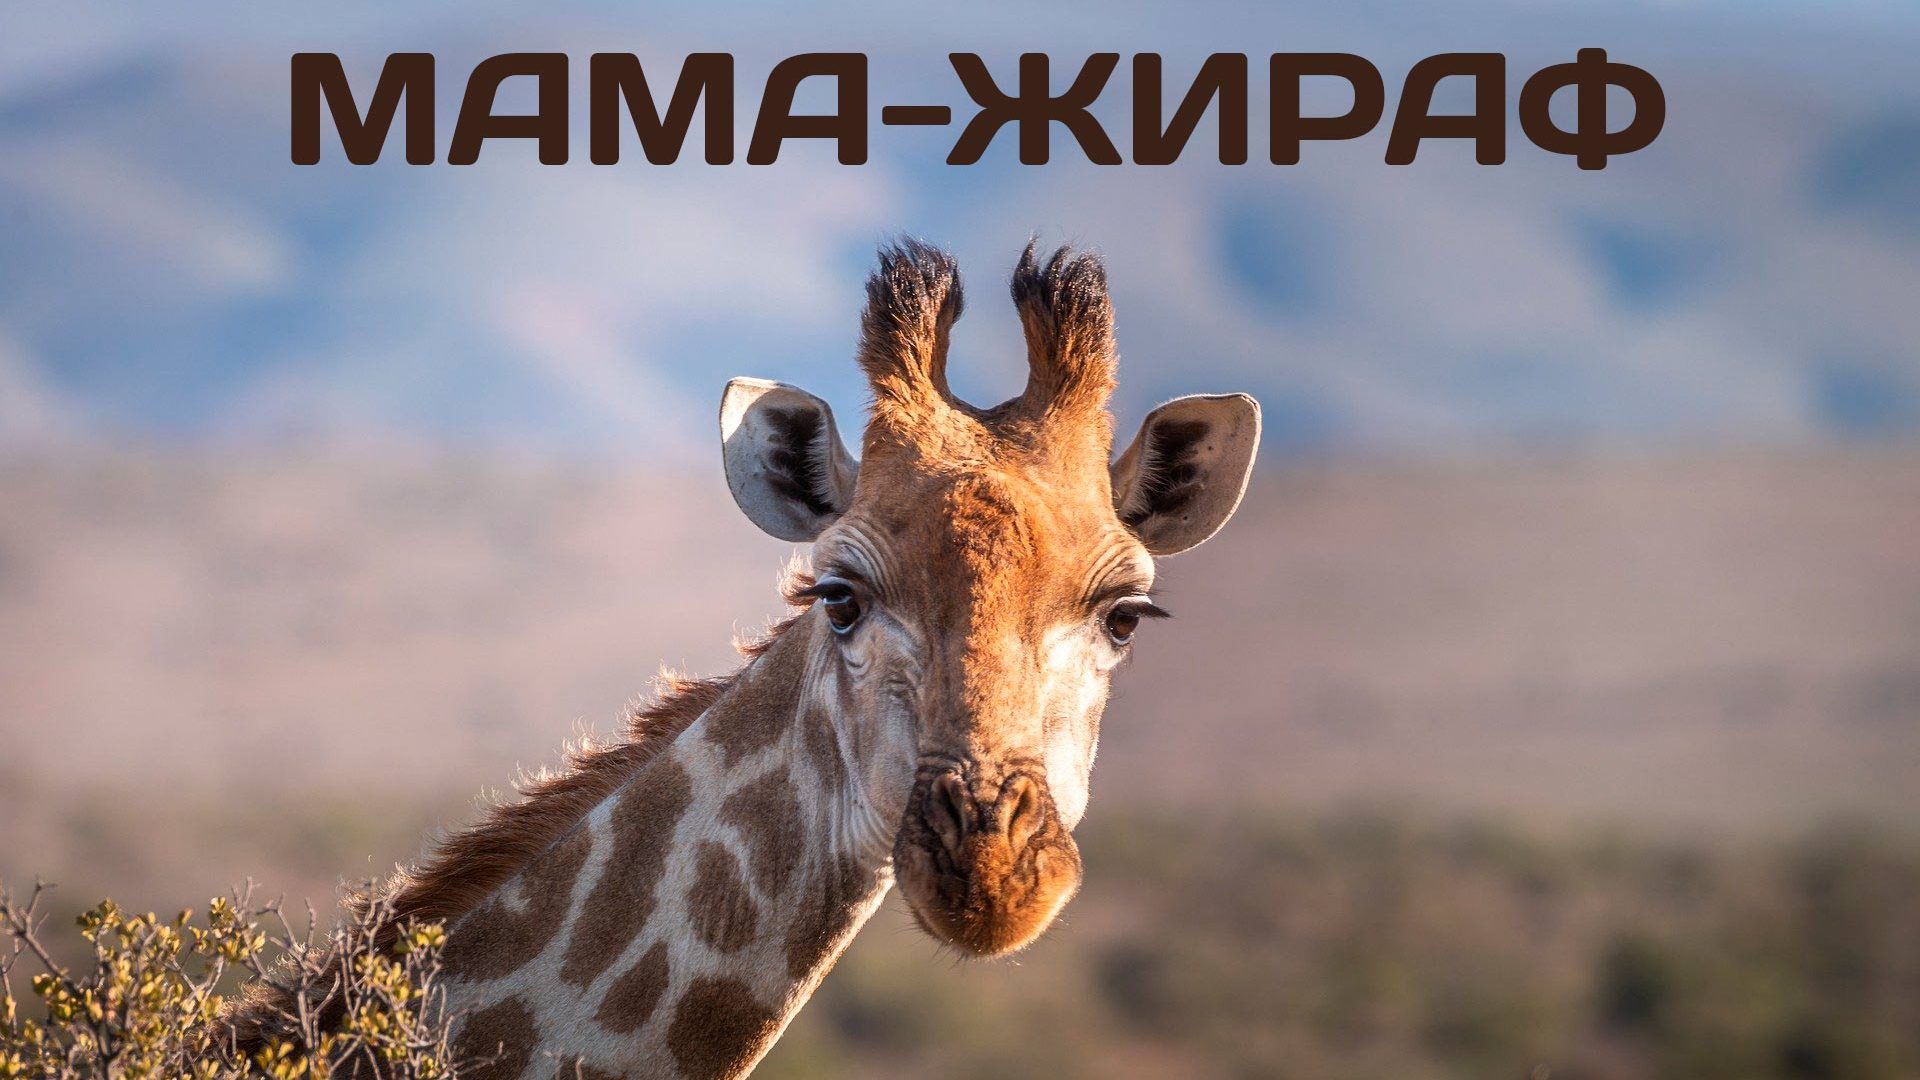 Мама-жираф